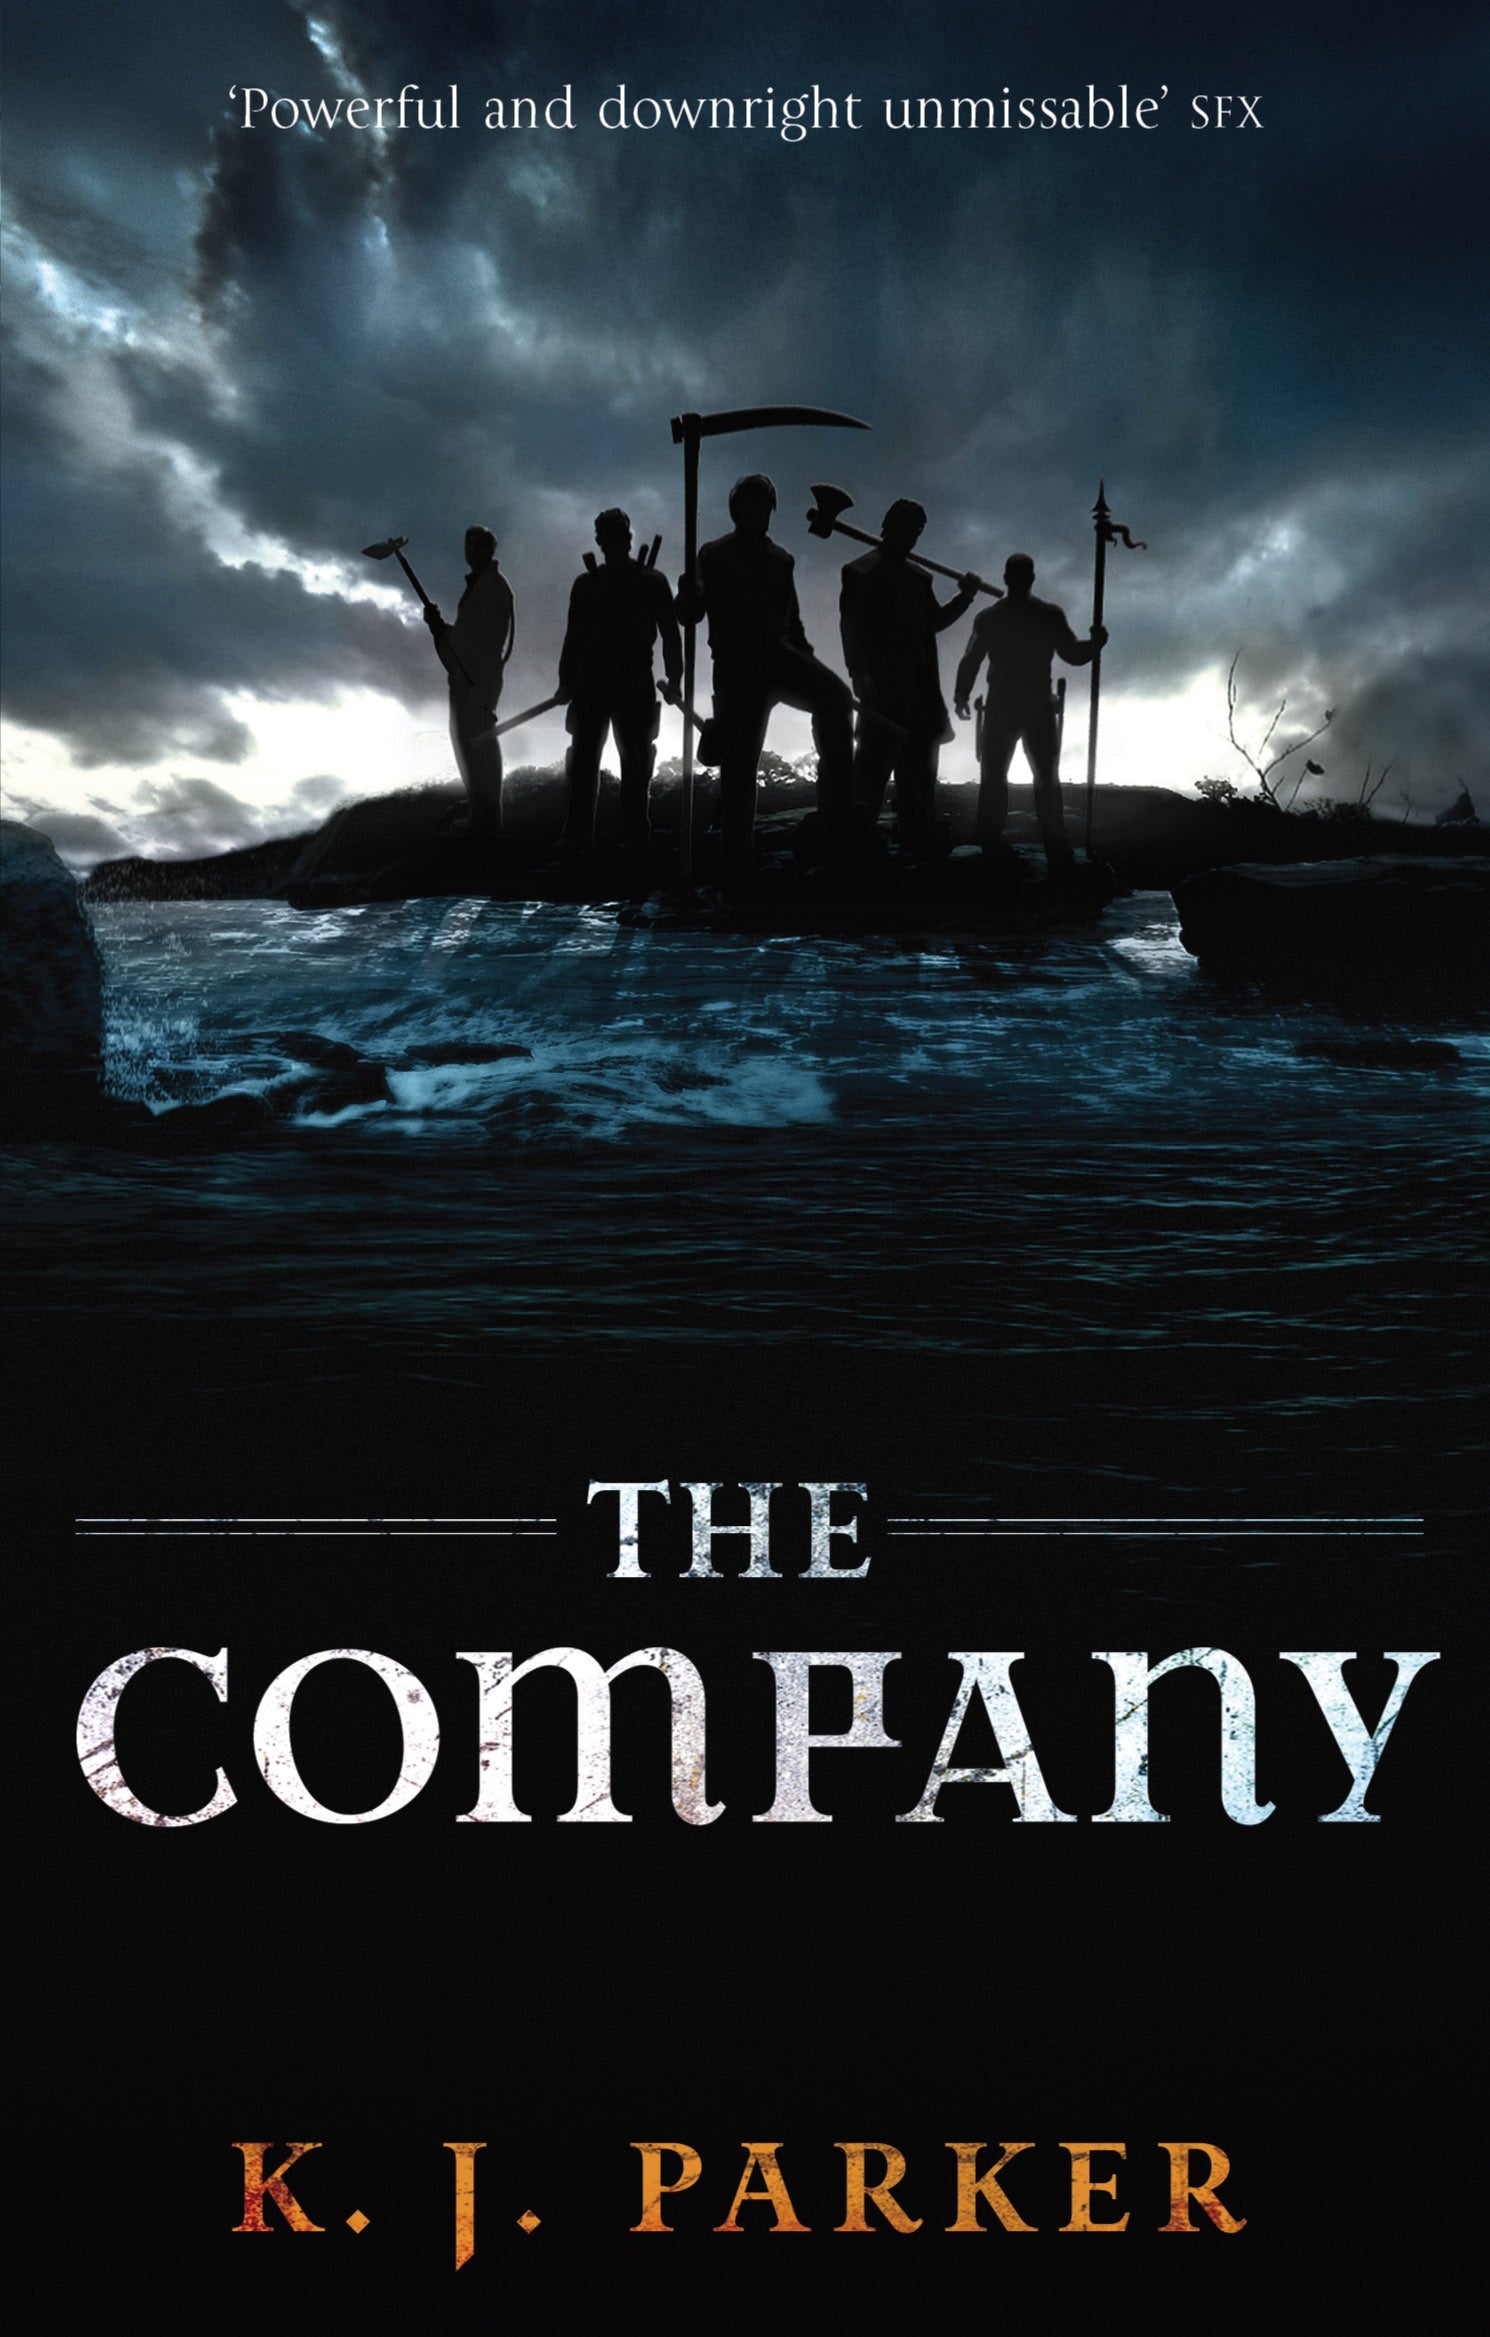 The Company by K. J. Parker